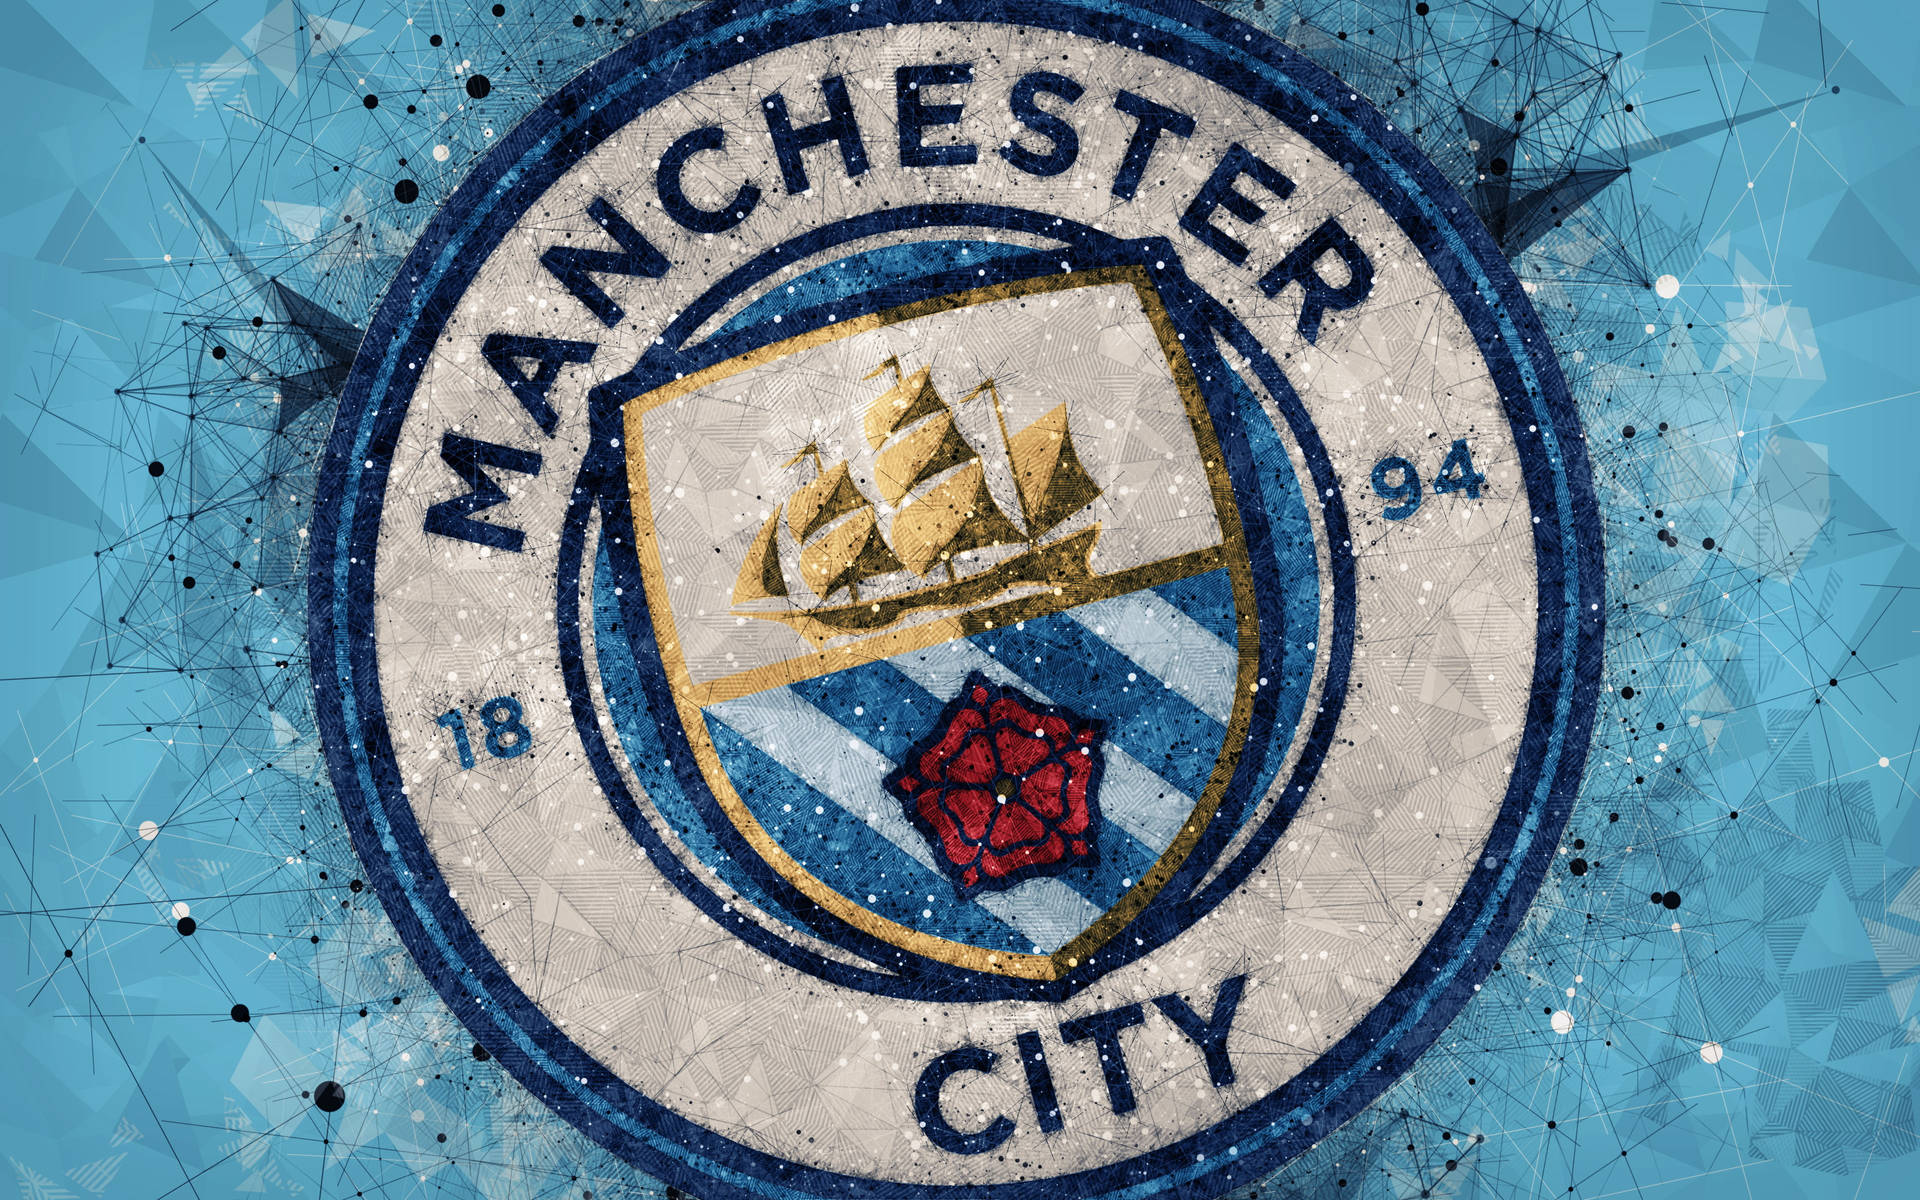 Manchester City Logo Abstract Art Wallpaper